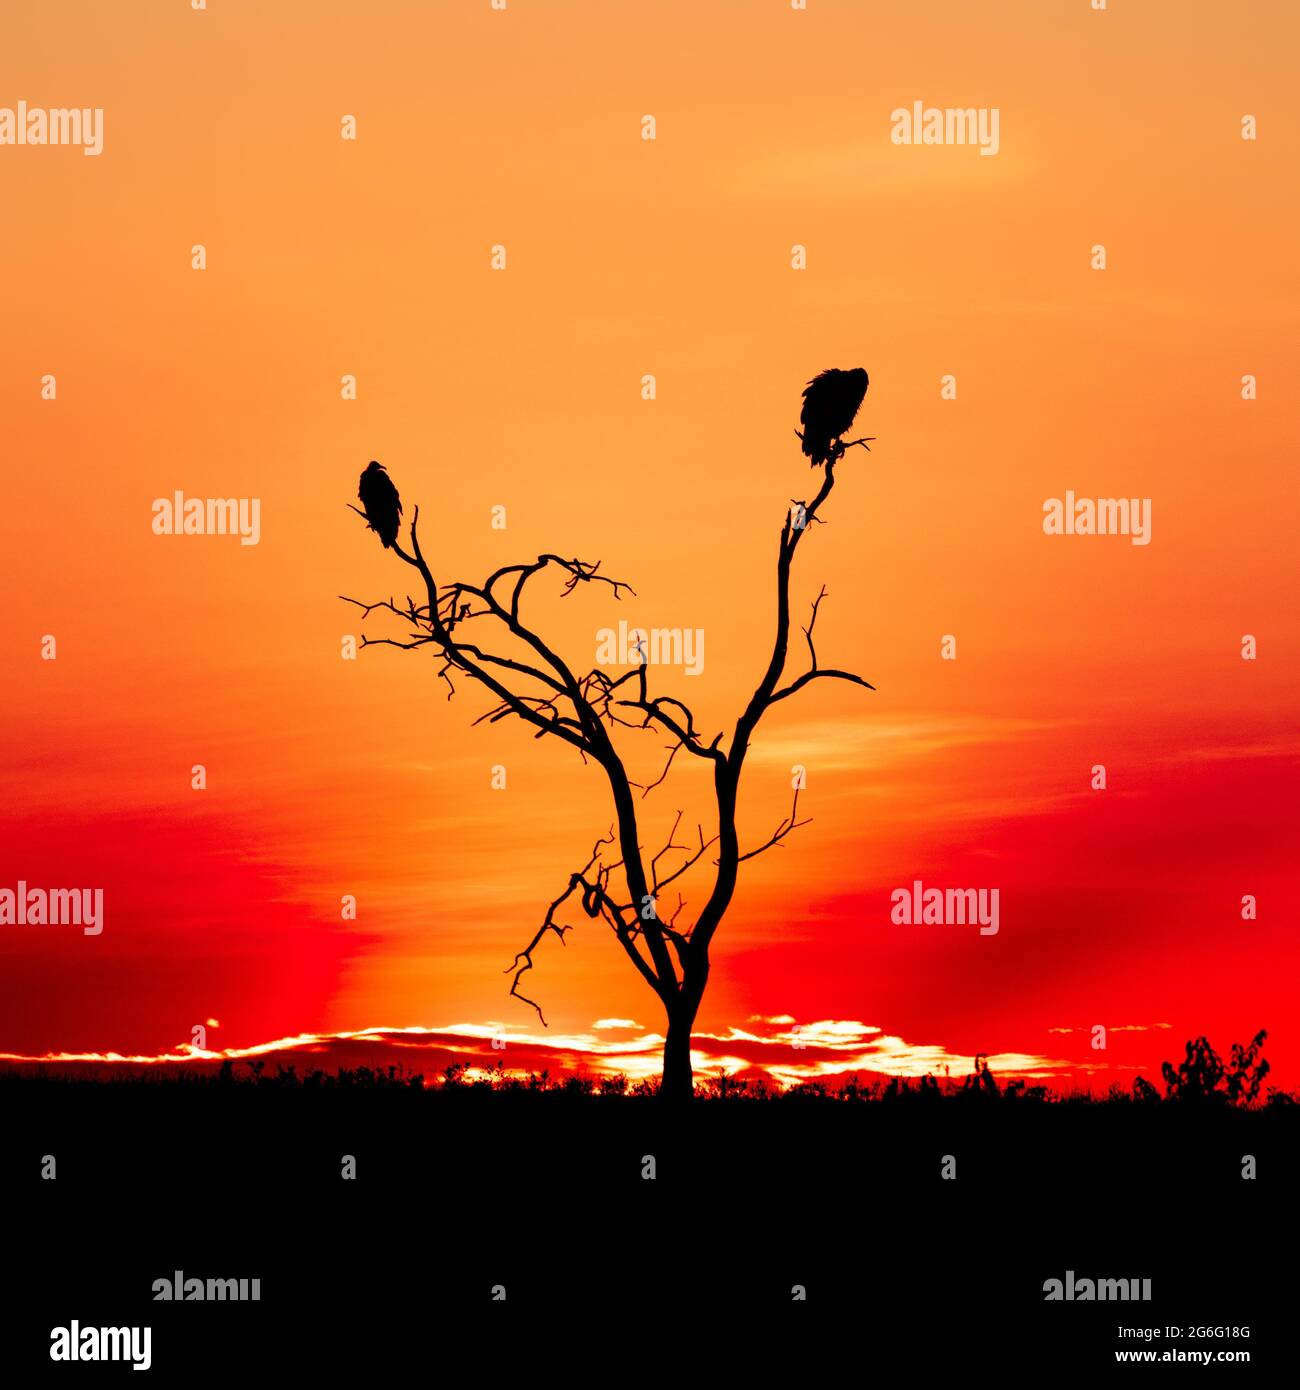 Zwei Geier bewachten die Ebenen, als die Sonne am Himmel versank. MAASAI MARA, KENIA: ATEMBERAUBENDE Fotografien zeigen einige der atemberaubendsten Bilder Afrikas Stockfoto